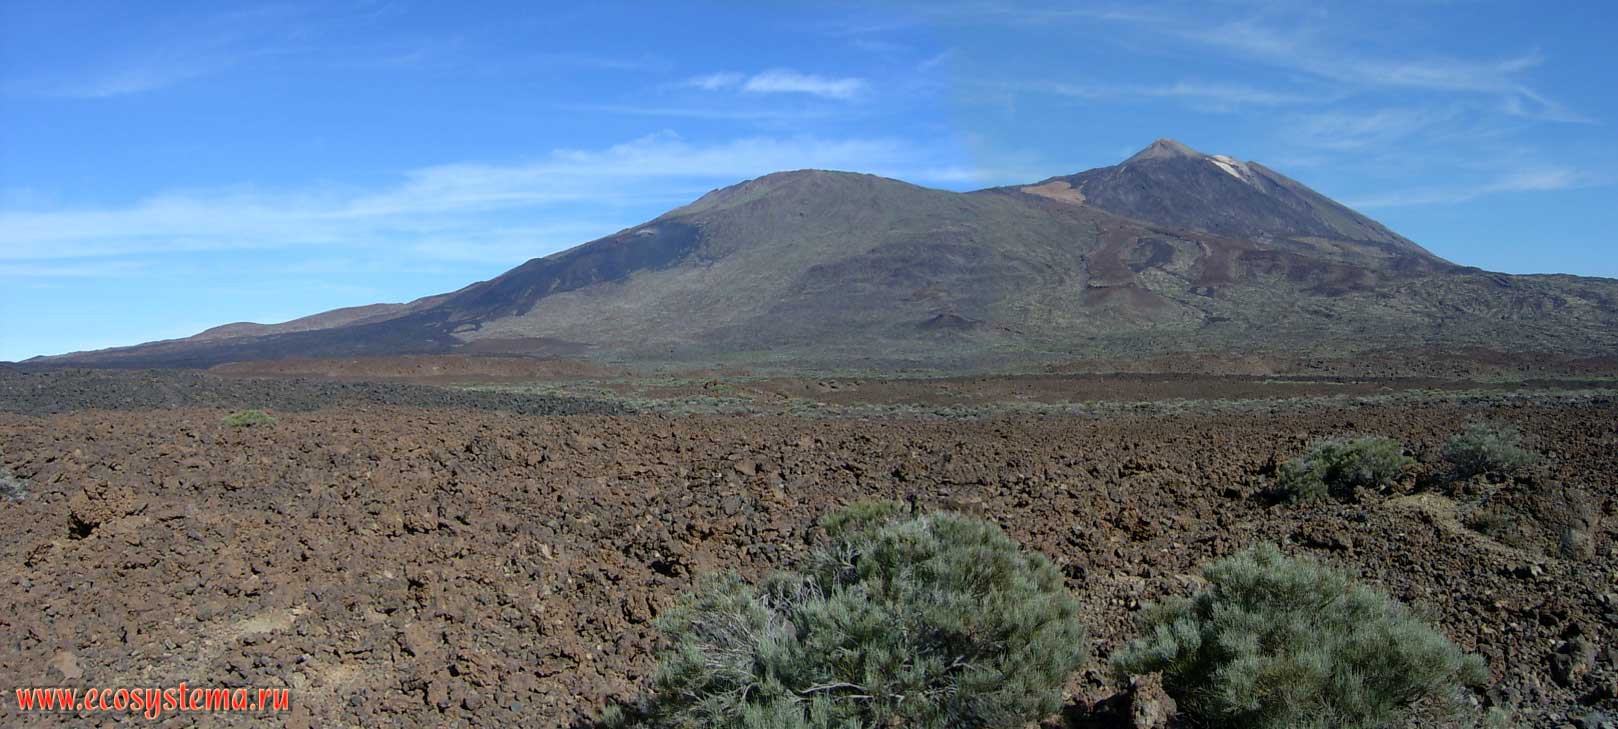 Панорама кальдеры Каньядас с конусами вулкана Тэйде (3718 м)
и вулкана Вьехо (3134 м, слева). Возраст лавы на дне кальдеры — 2000 лет
(красноватых оттенков), потоки черного цвета — результат извержения 1709 г.
Высота места съемки — 2500 м над уровнем моря